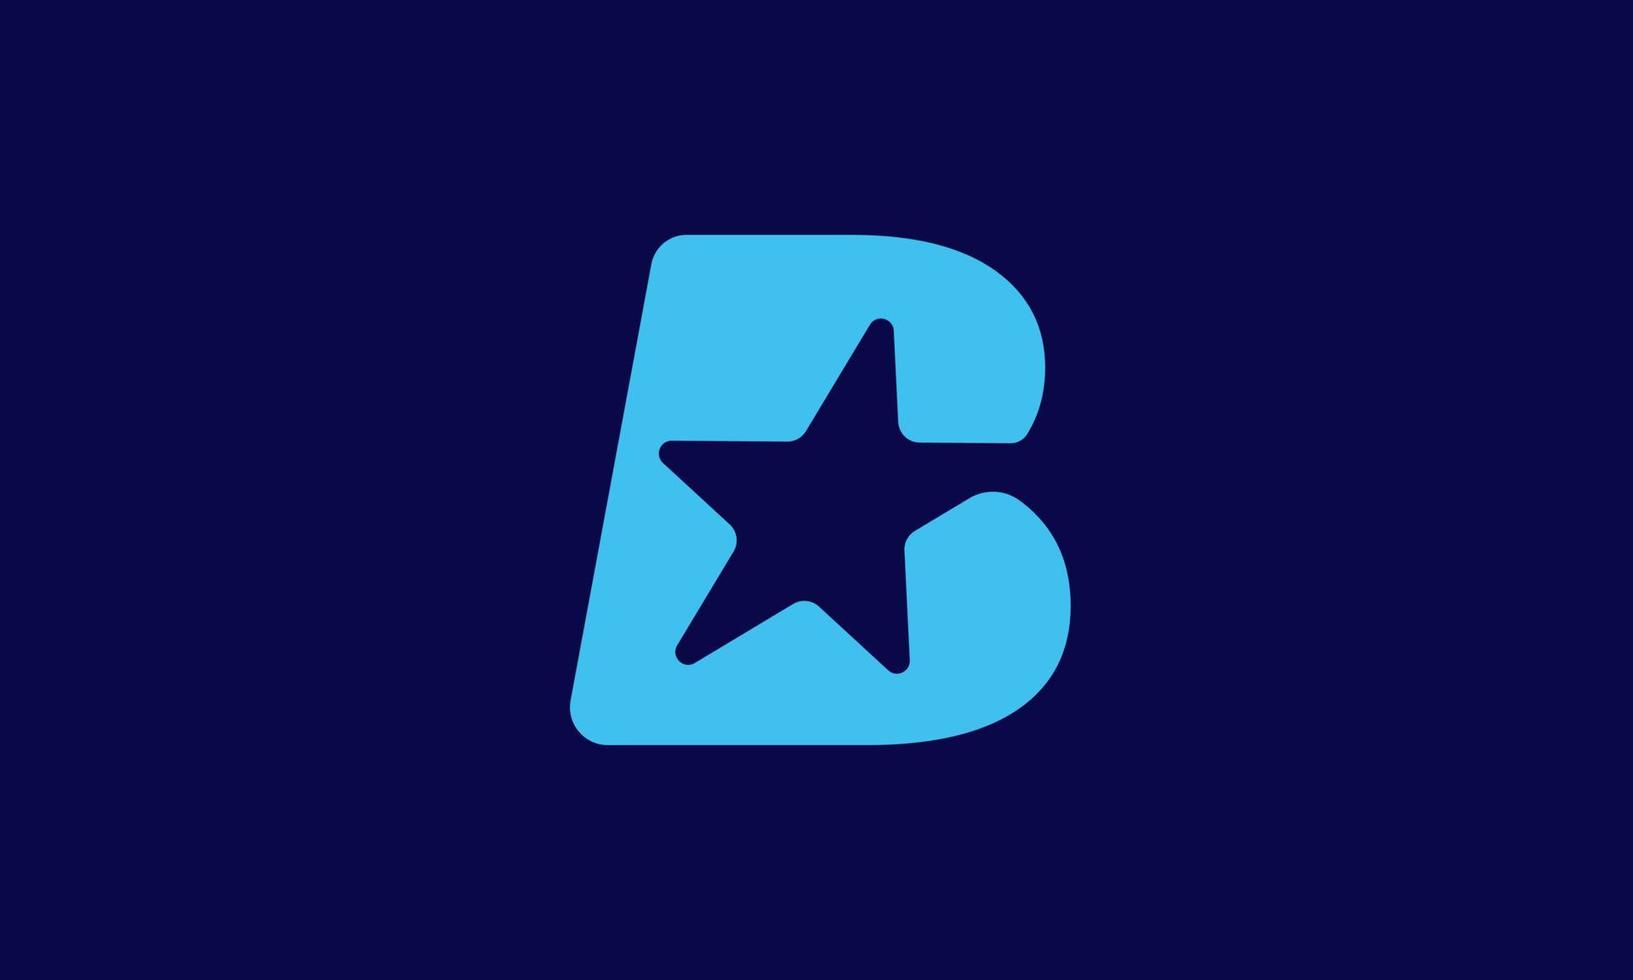 b création de logo étoile. lettre abstraite b avec création de logo étoile. illustrations vectorielles vecteur